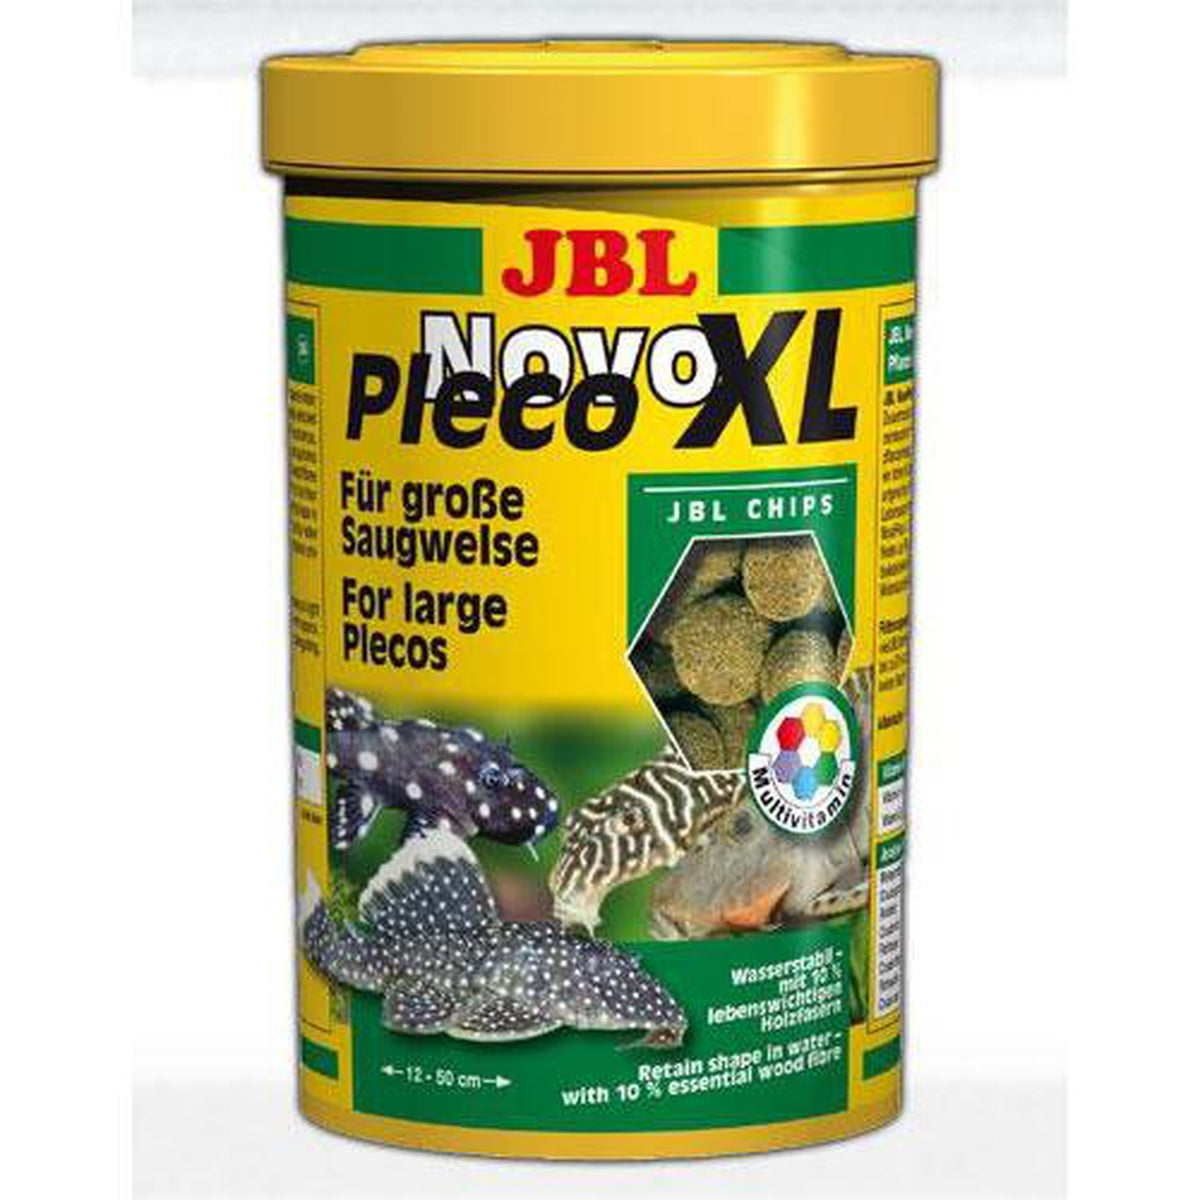 JBL_Novo_Pleco_XL95_enl_RFVGGCCP0267.jpg